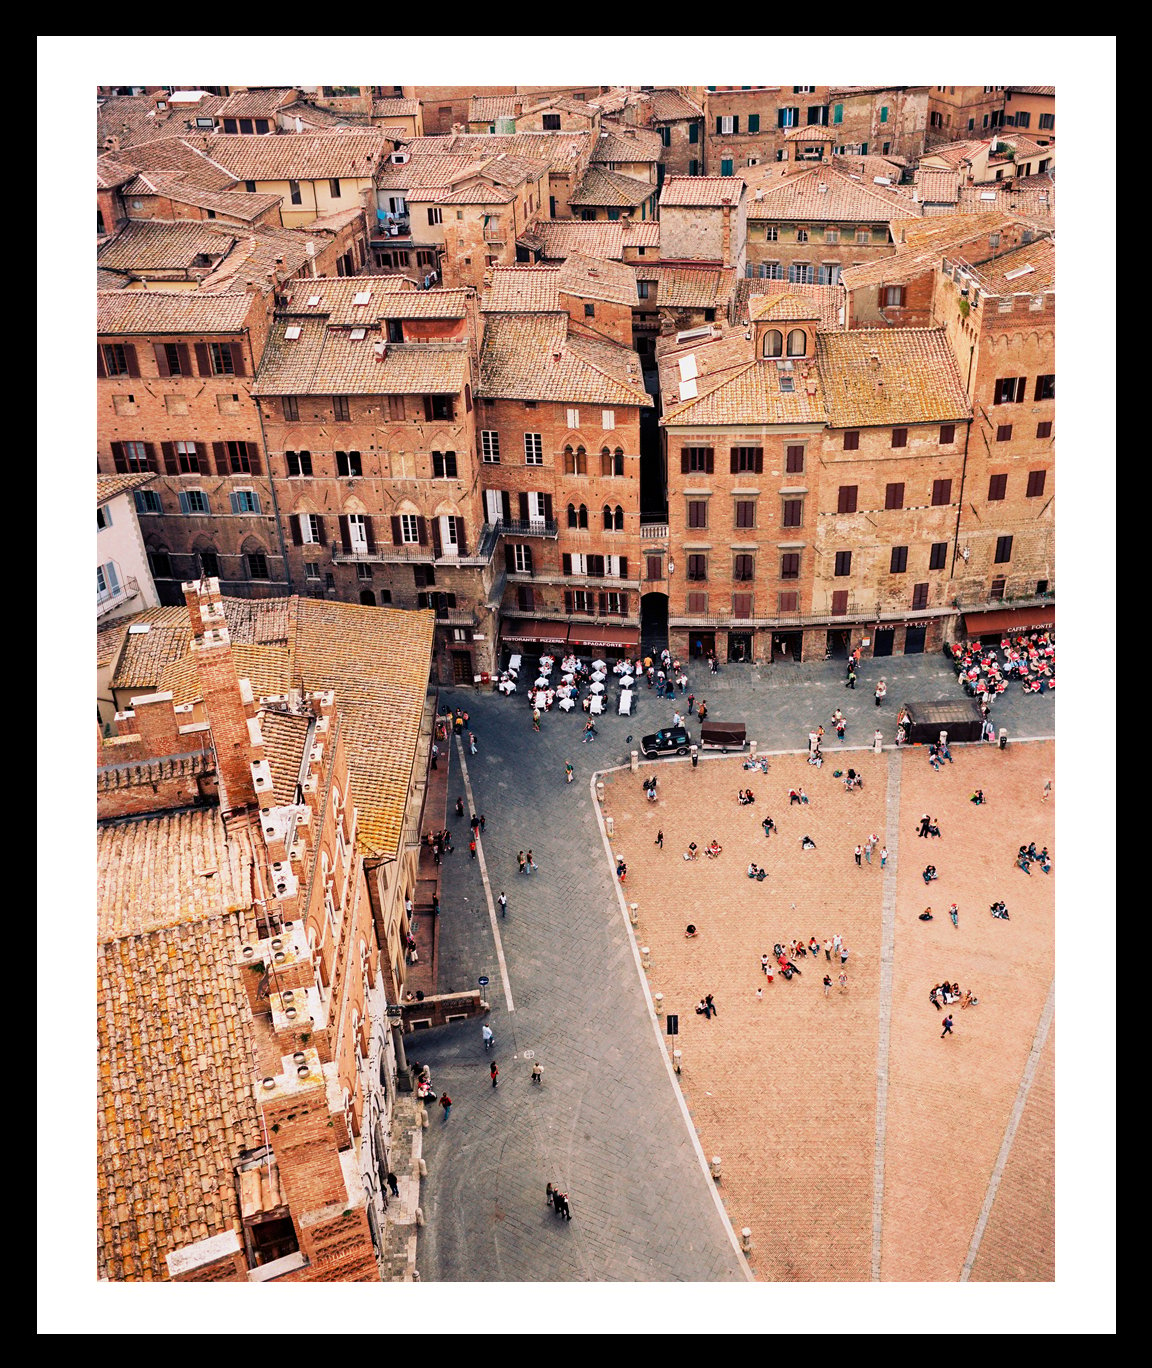 Image of Piazza del Campo. Siena, Italy. 2008